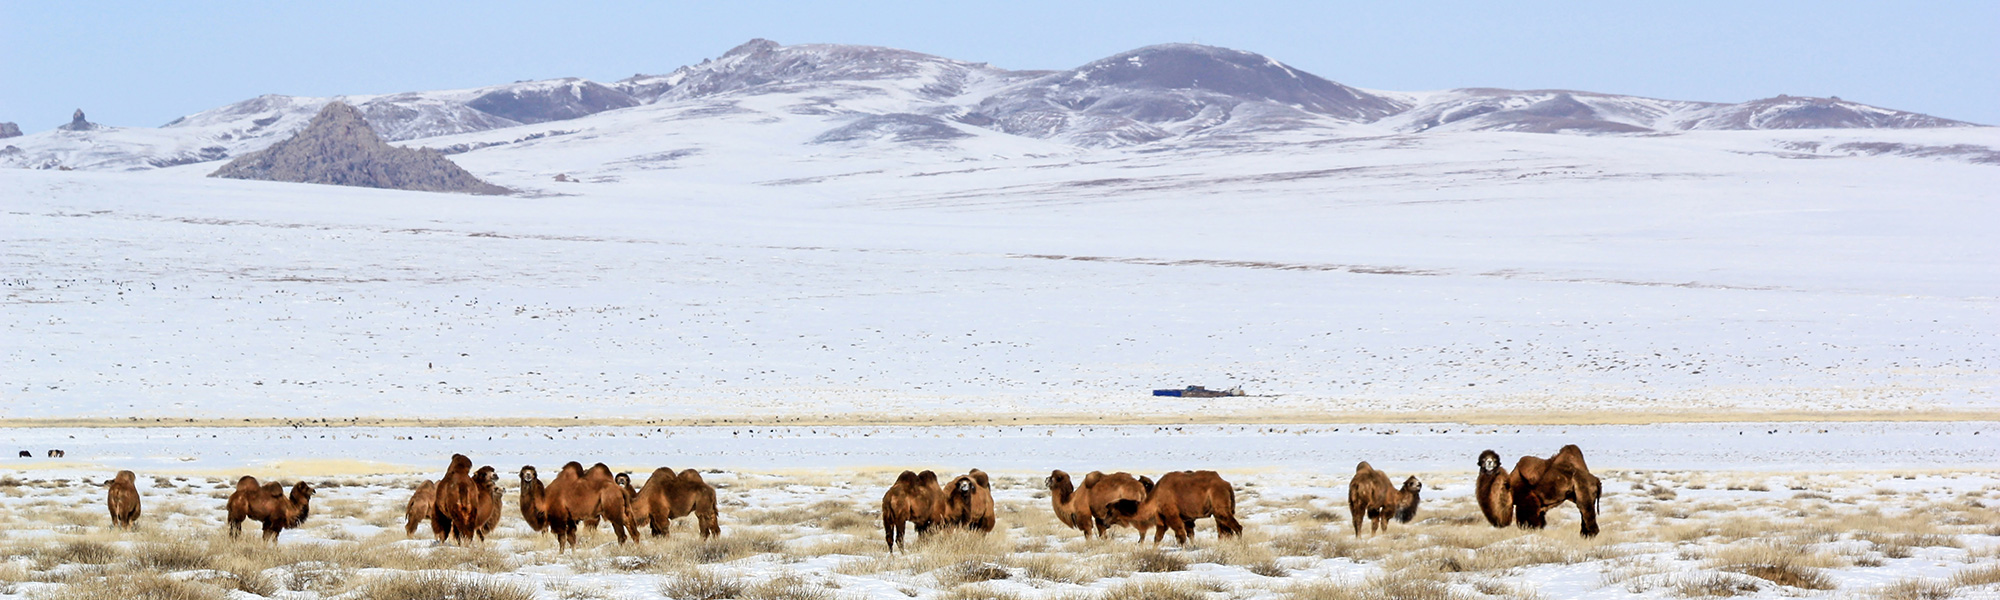 Découverte Mongolie © Joël Rauzy